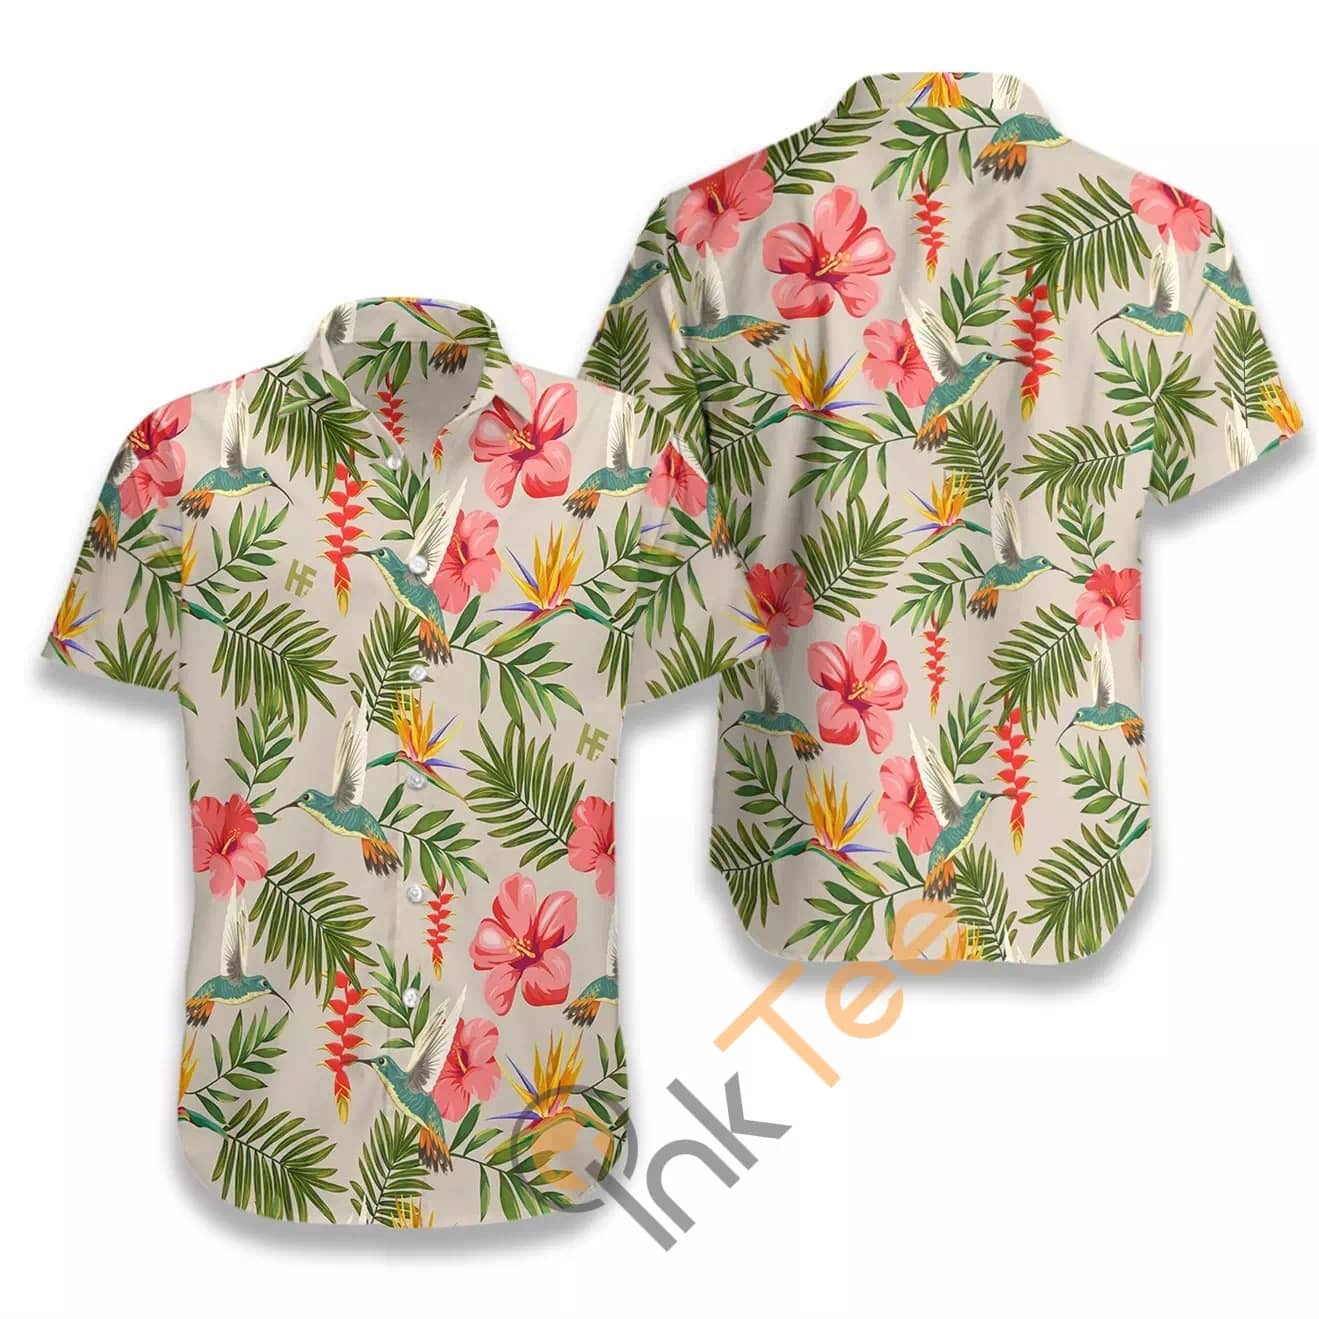 Hummingbird Tropical N513 Hawaiian shirts